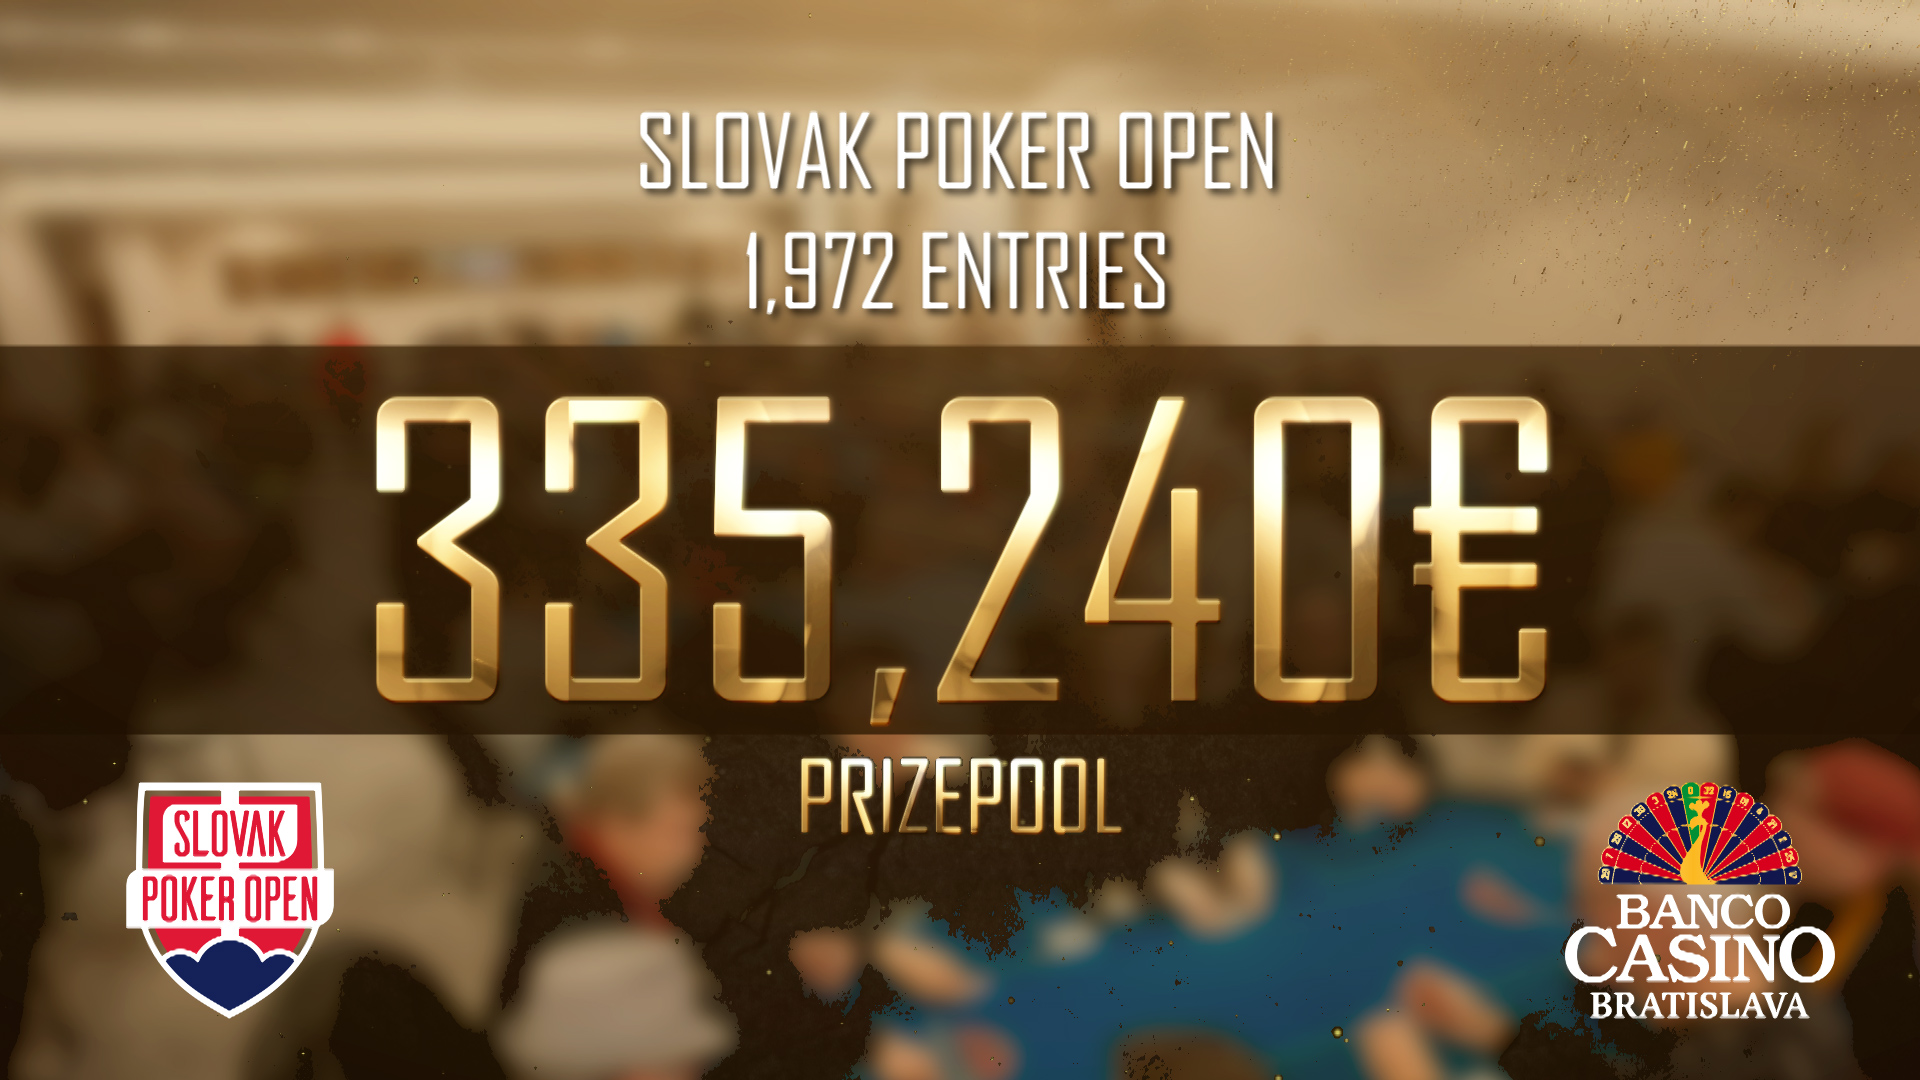 Slovak Poker Open hat einen neuen Rekord aufgestellt - 1.972 Entries, € 335.240 Preisgeld und für den Sieger steht € 61.400 bereit!